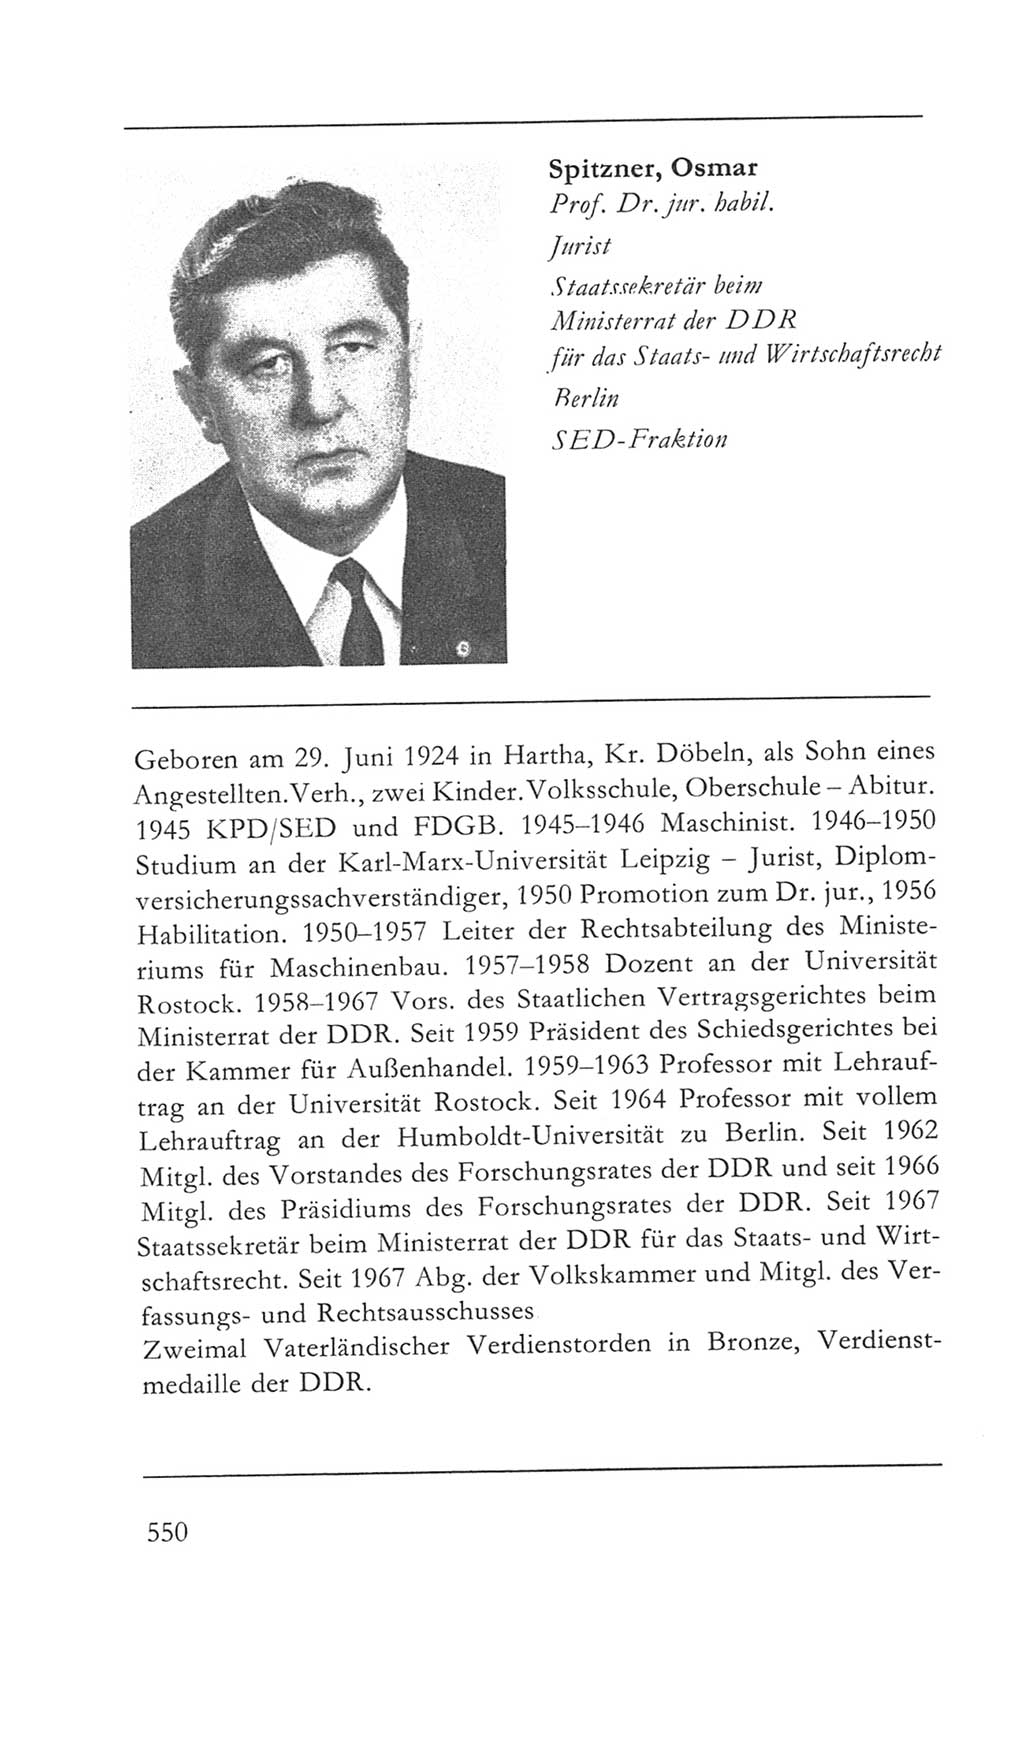 Volkskammer (VK) der Deutschen Demokratischen Republik (DDR) 5. Wahlperiode 1967-1971, Seite 550 (VK. DDR 5. WP. 1967-1971, S. 550)